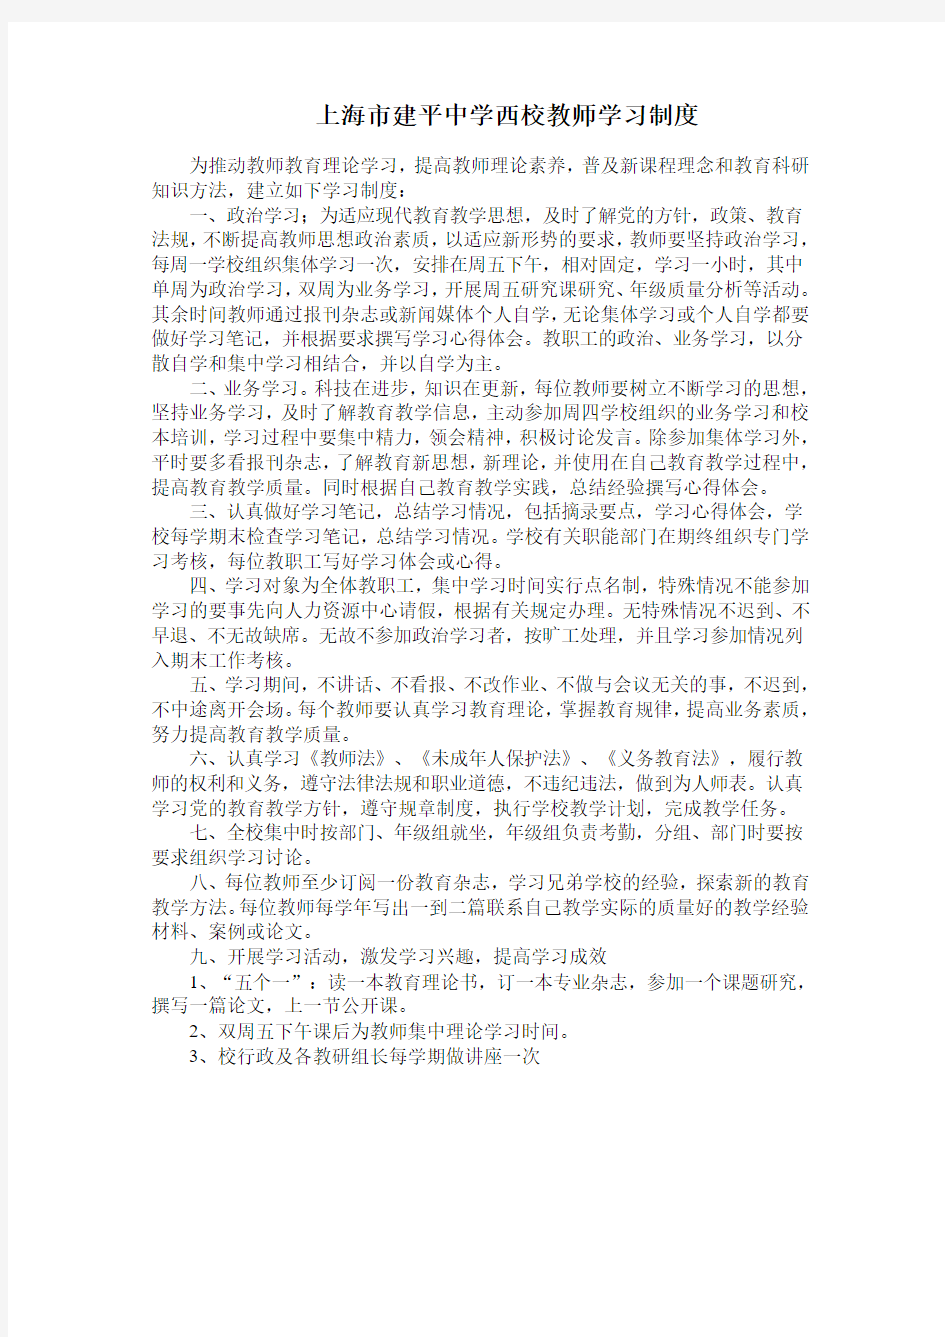 上海市建平中学西校教师学习制度